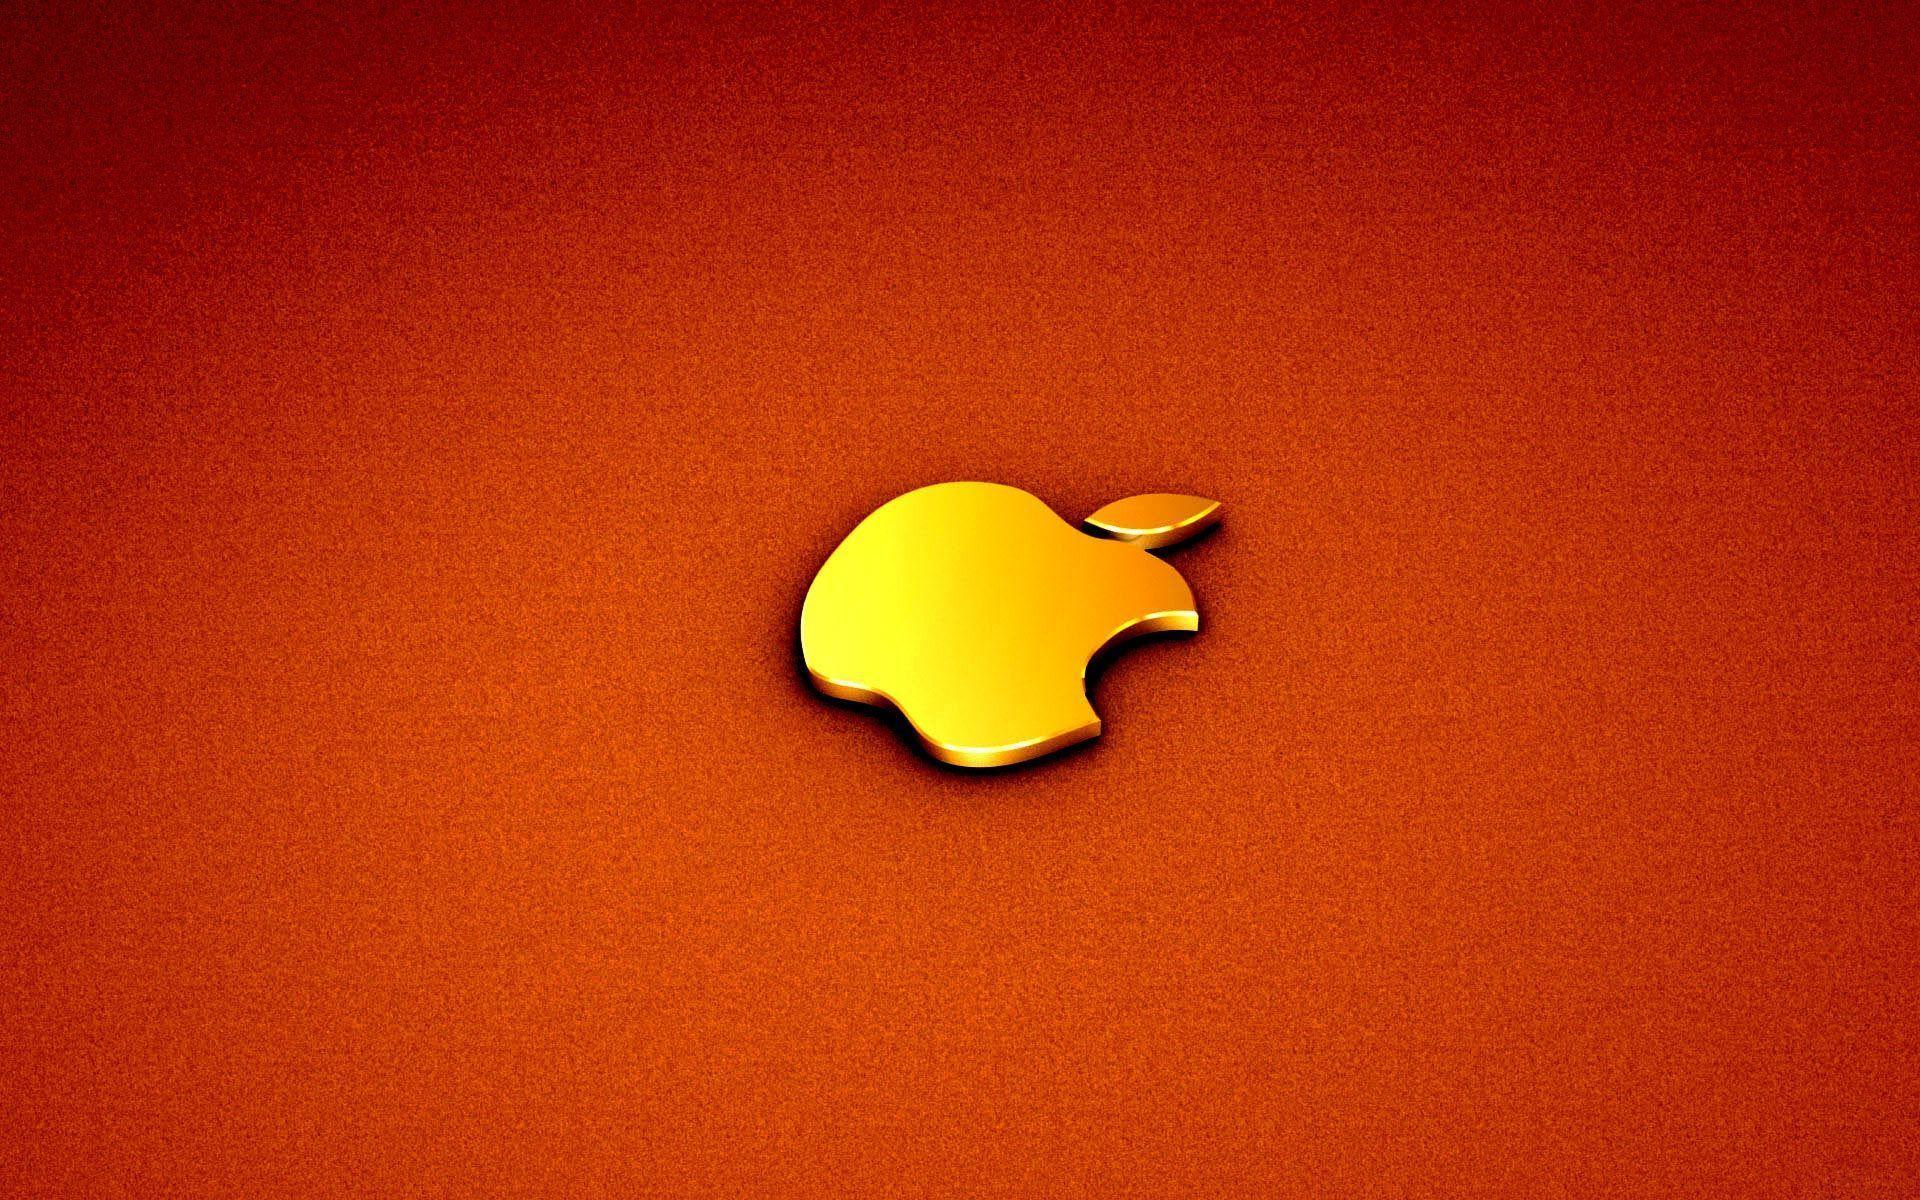 Desktop Wallpaper · Gallery · Computers · Golden Apple MacBook Pro